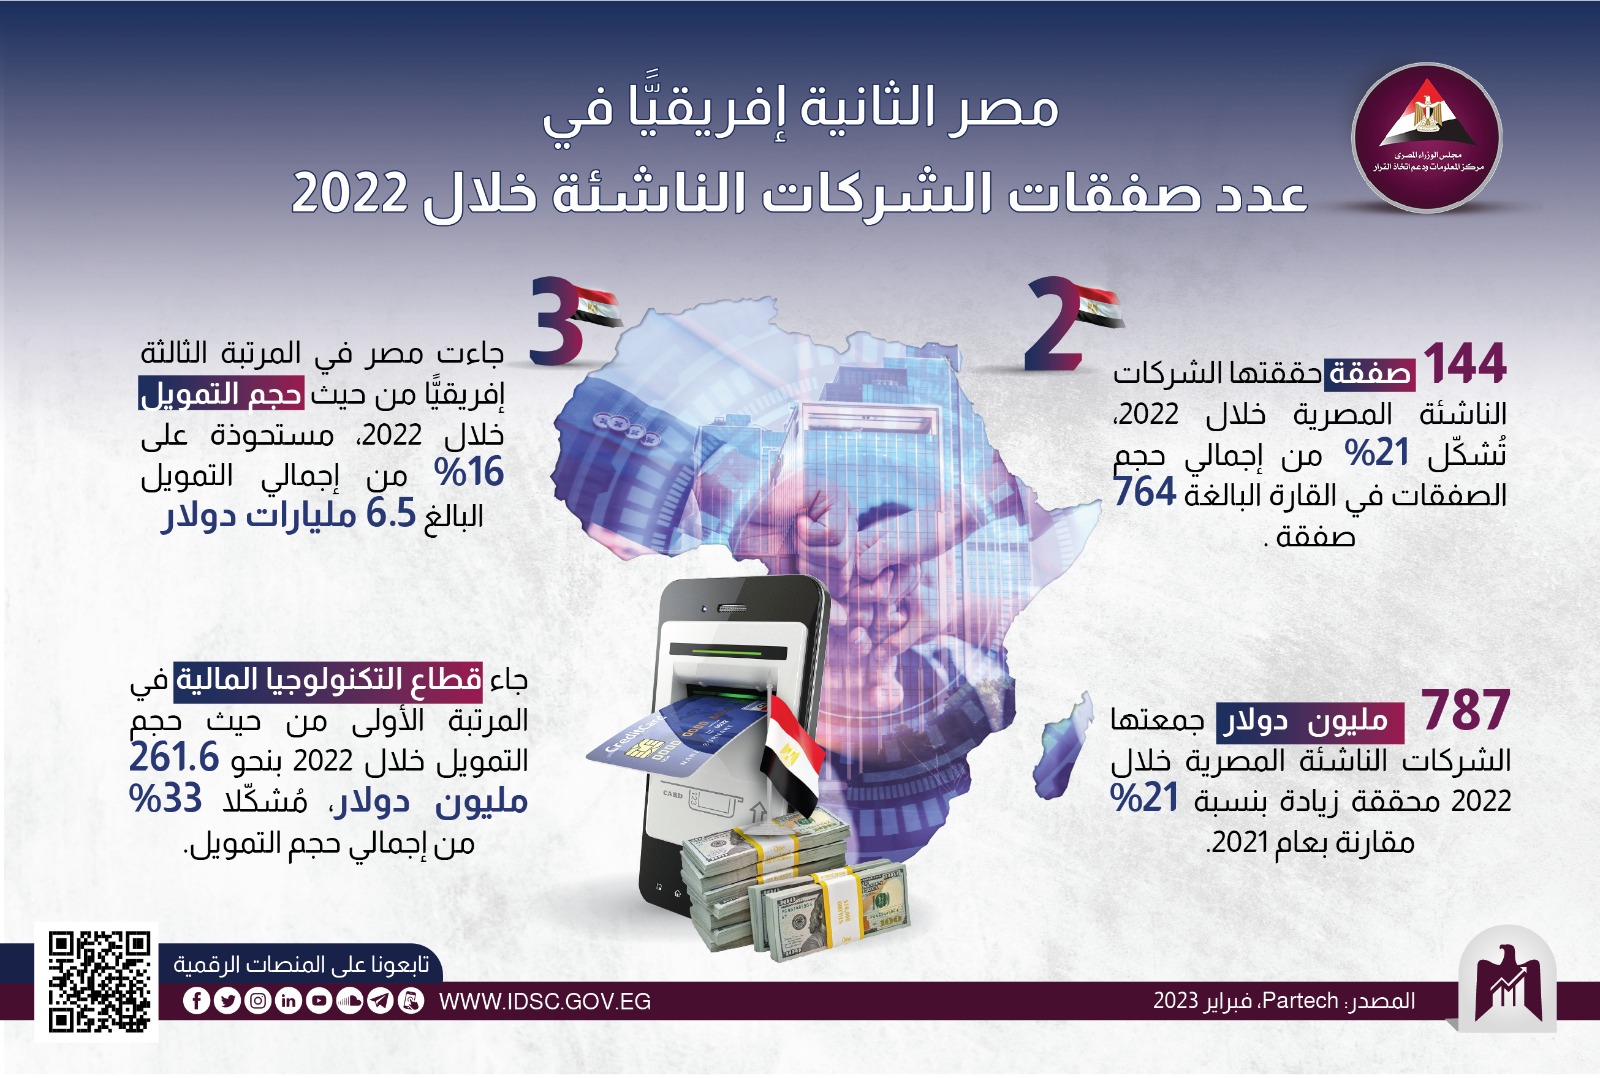 مصر الثانية إفريقيا في عدد صفقات الشركات الناشئة 2022